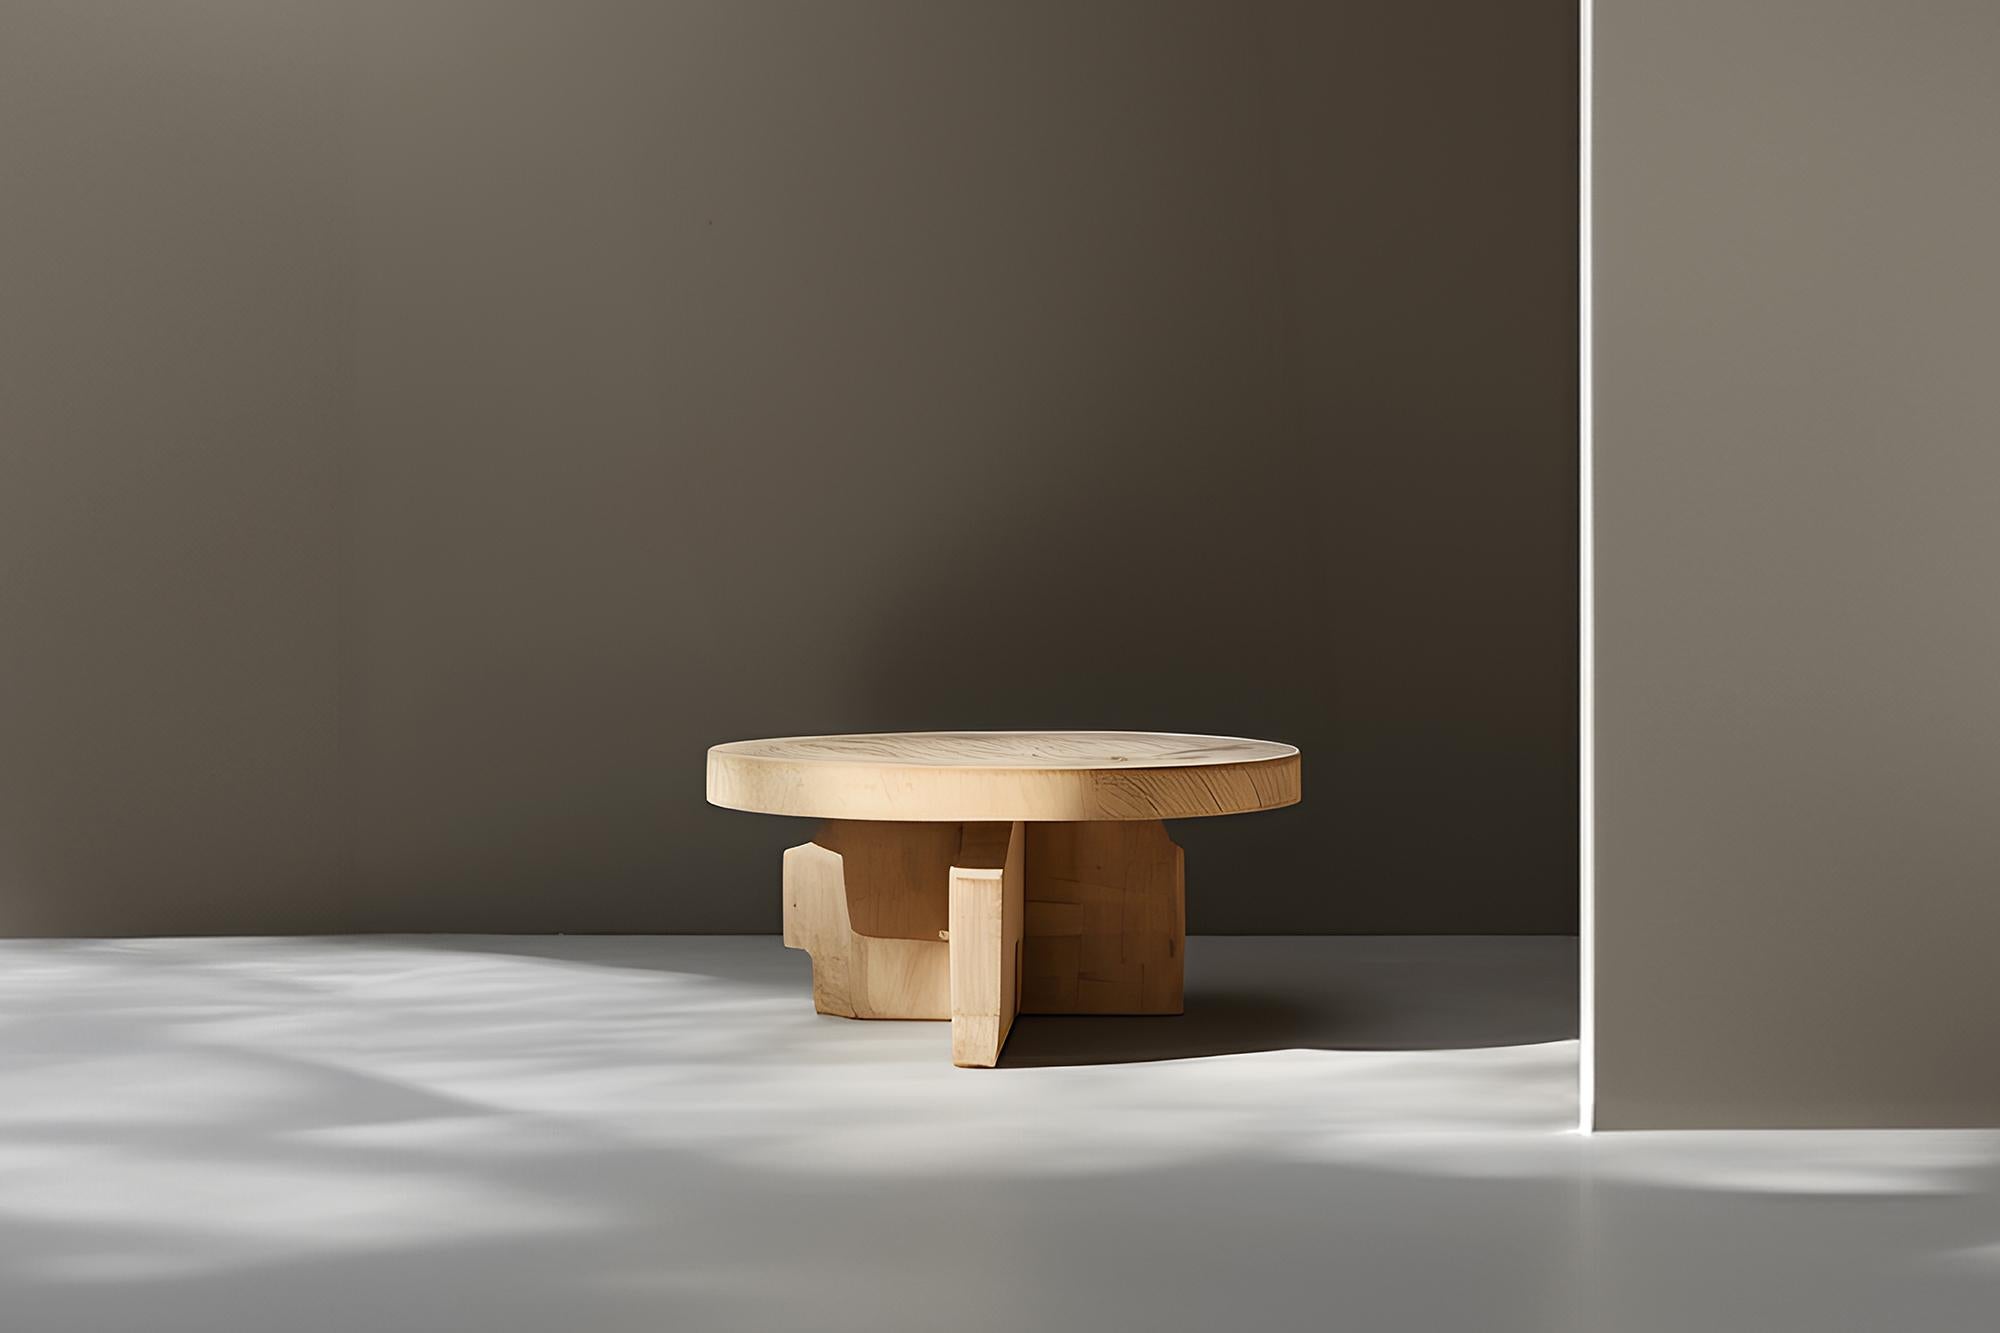 Fundamenta 66 lignes élégantes et rondes en chêne abstrait de Solid Craft par NONO

Table basse sculpturale en bois massif avec une finition naturelle à base d'eau ou teintée en noir. En raison de la nature du processus de production, chaque pièce